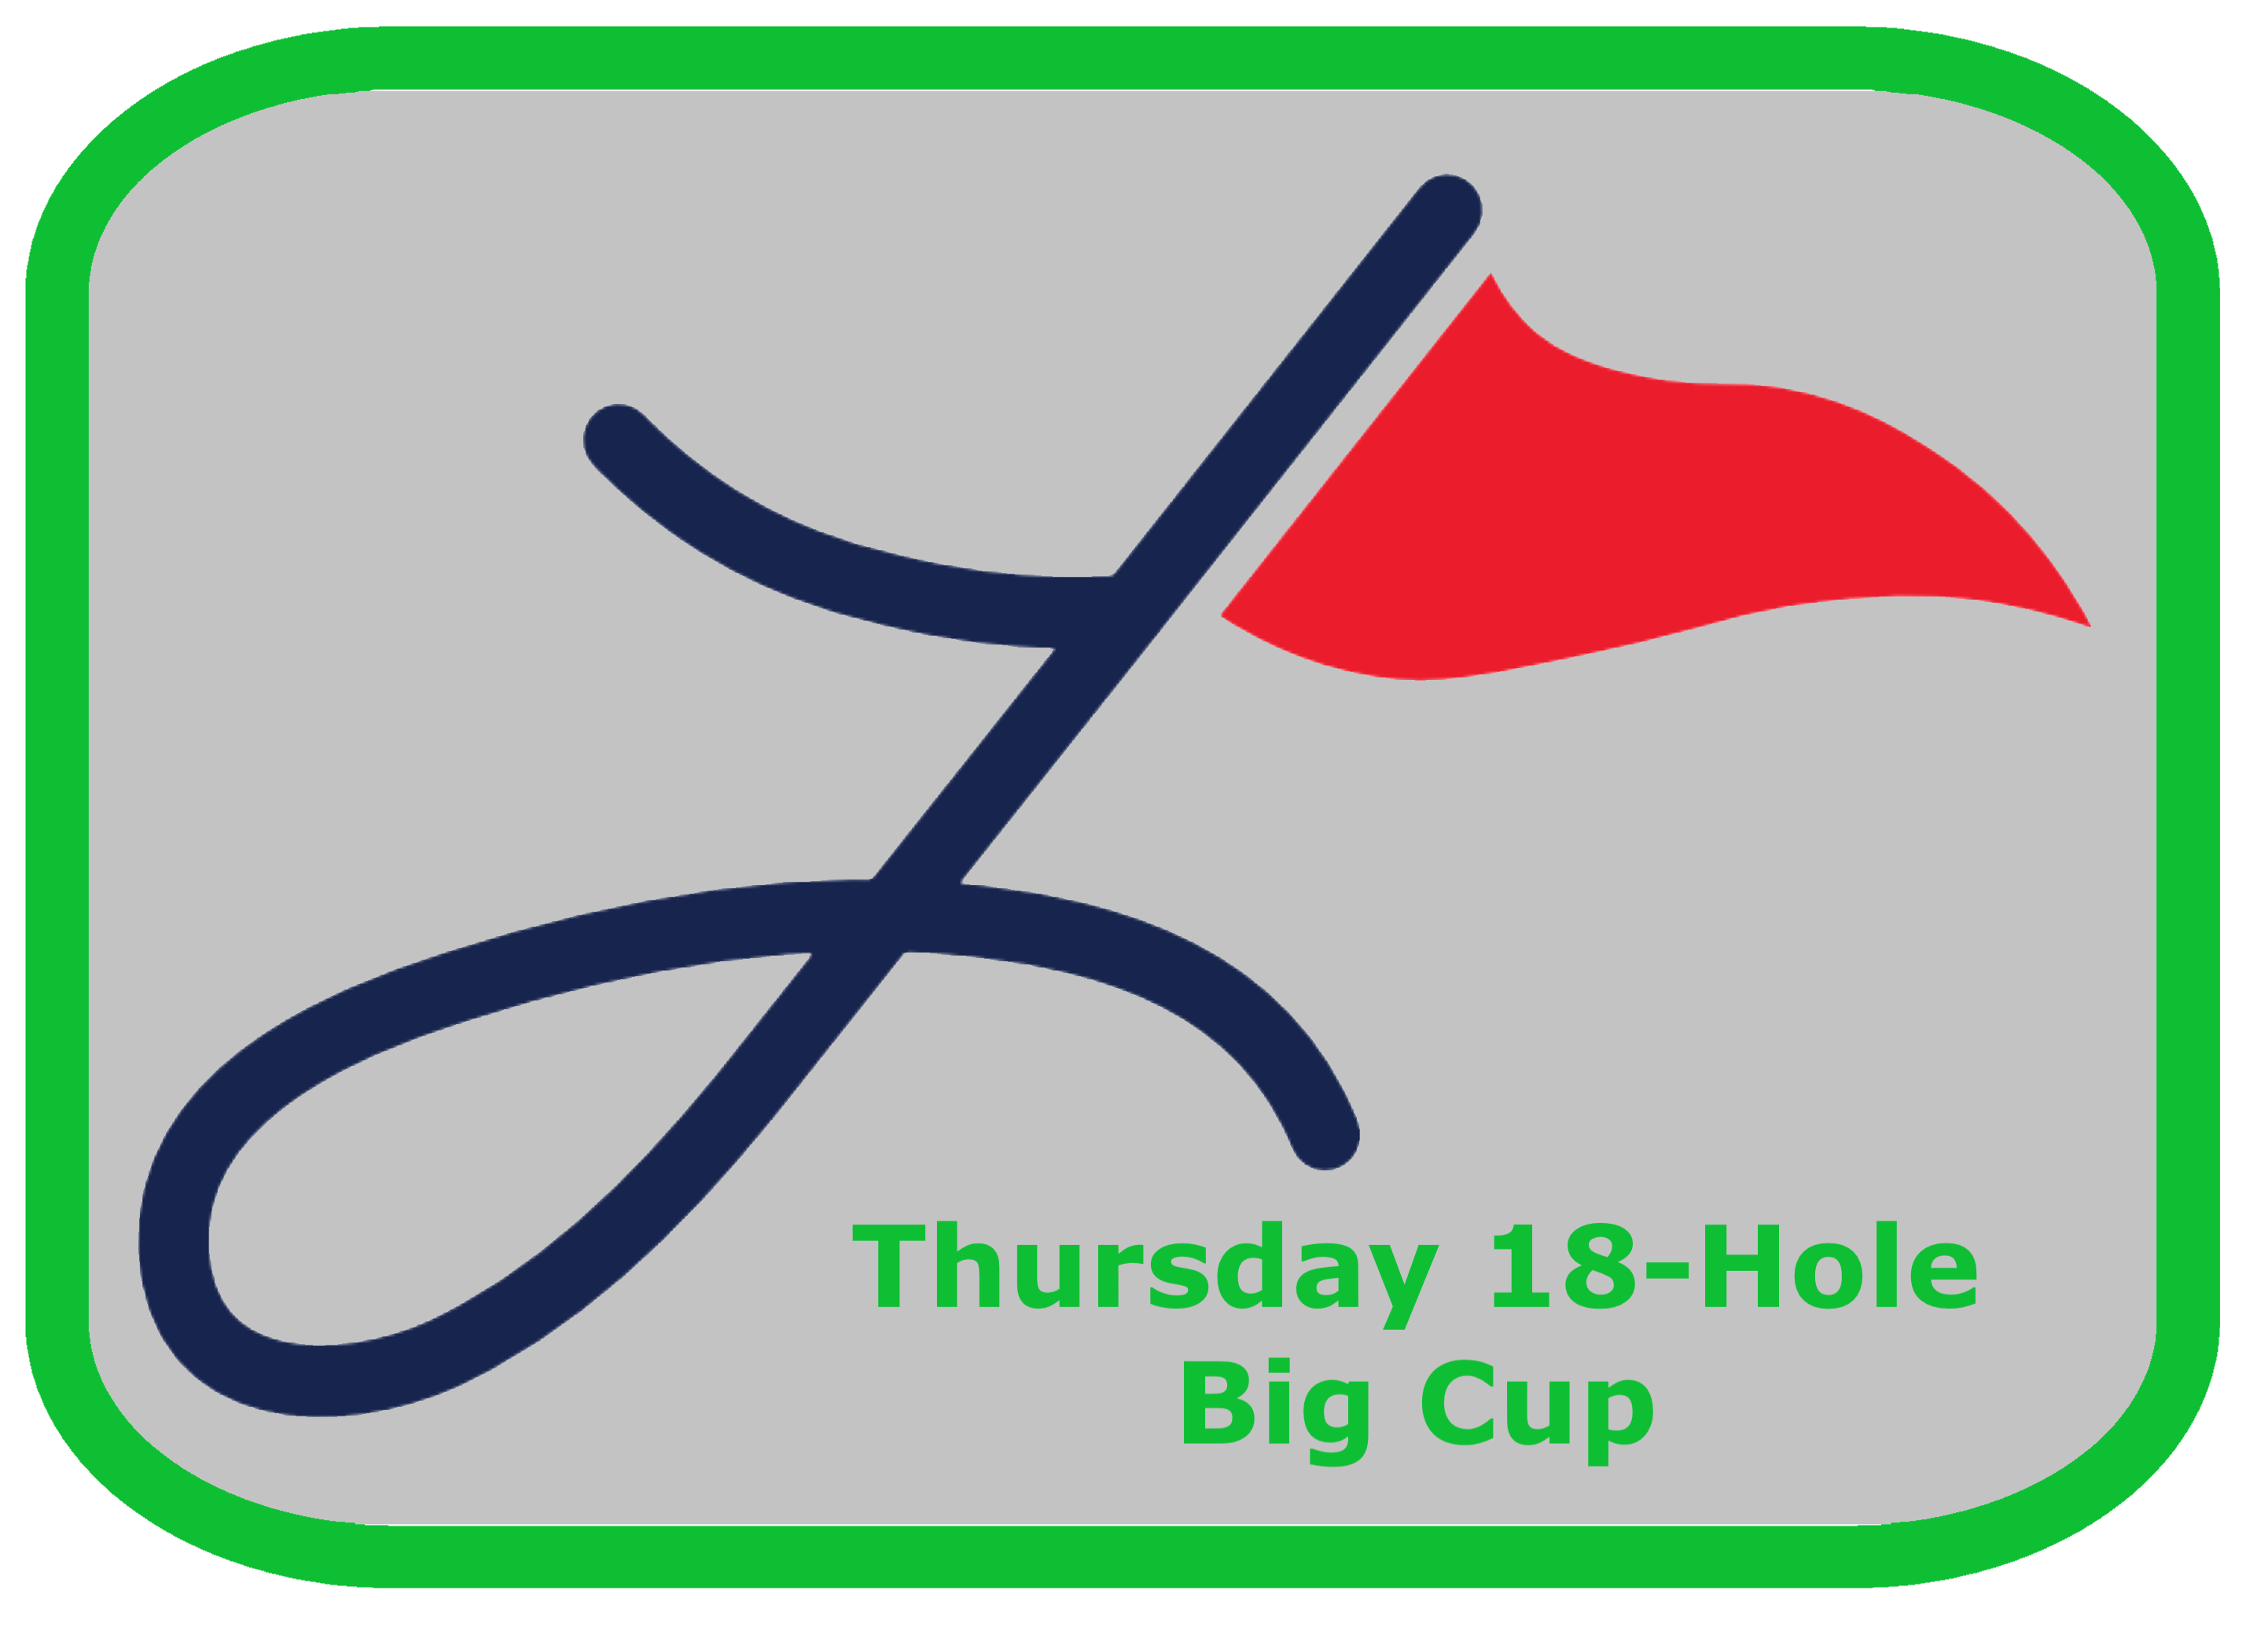 Thursday 18-Hole BIG CUP